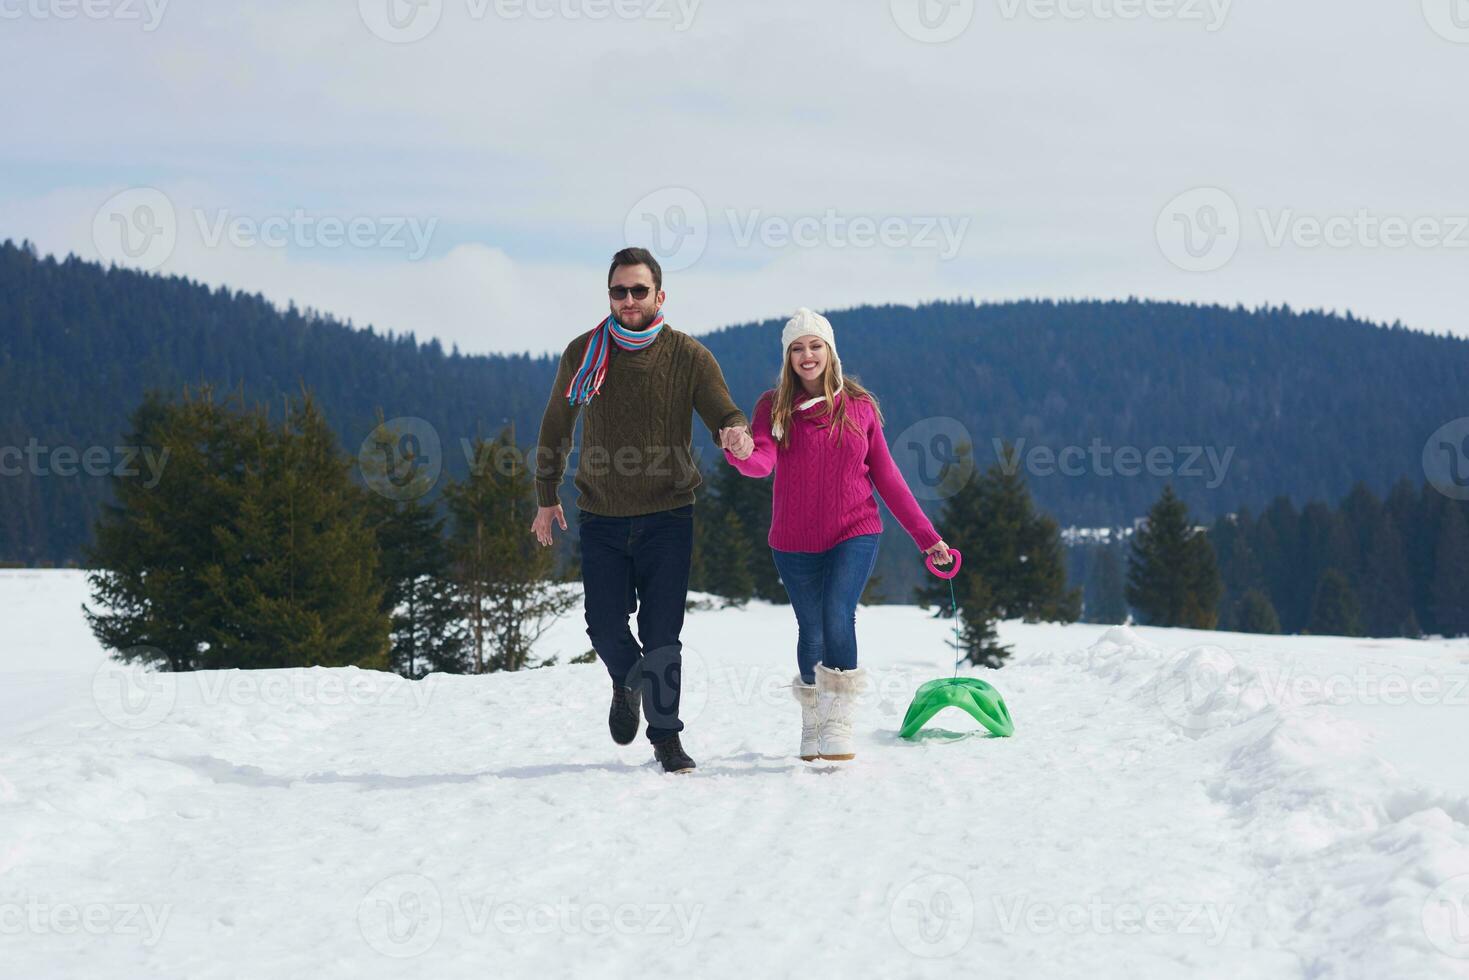 casal jovem feliz se divertindo no show fresco nas férias de inverno foto